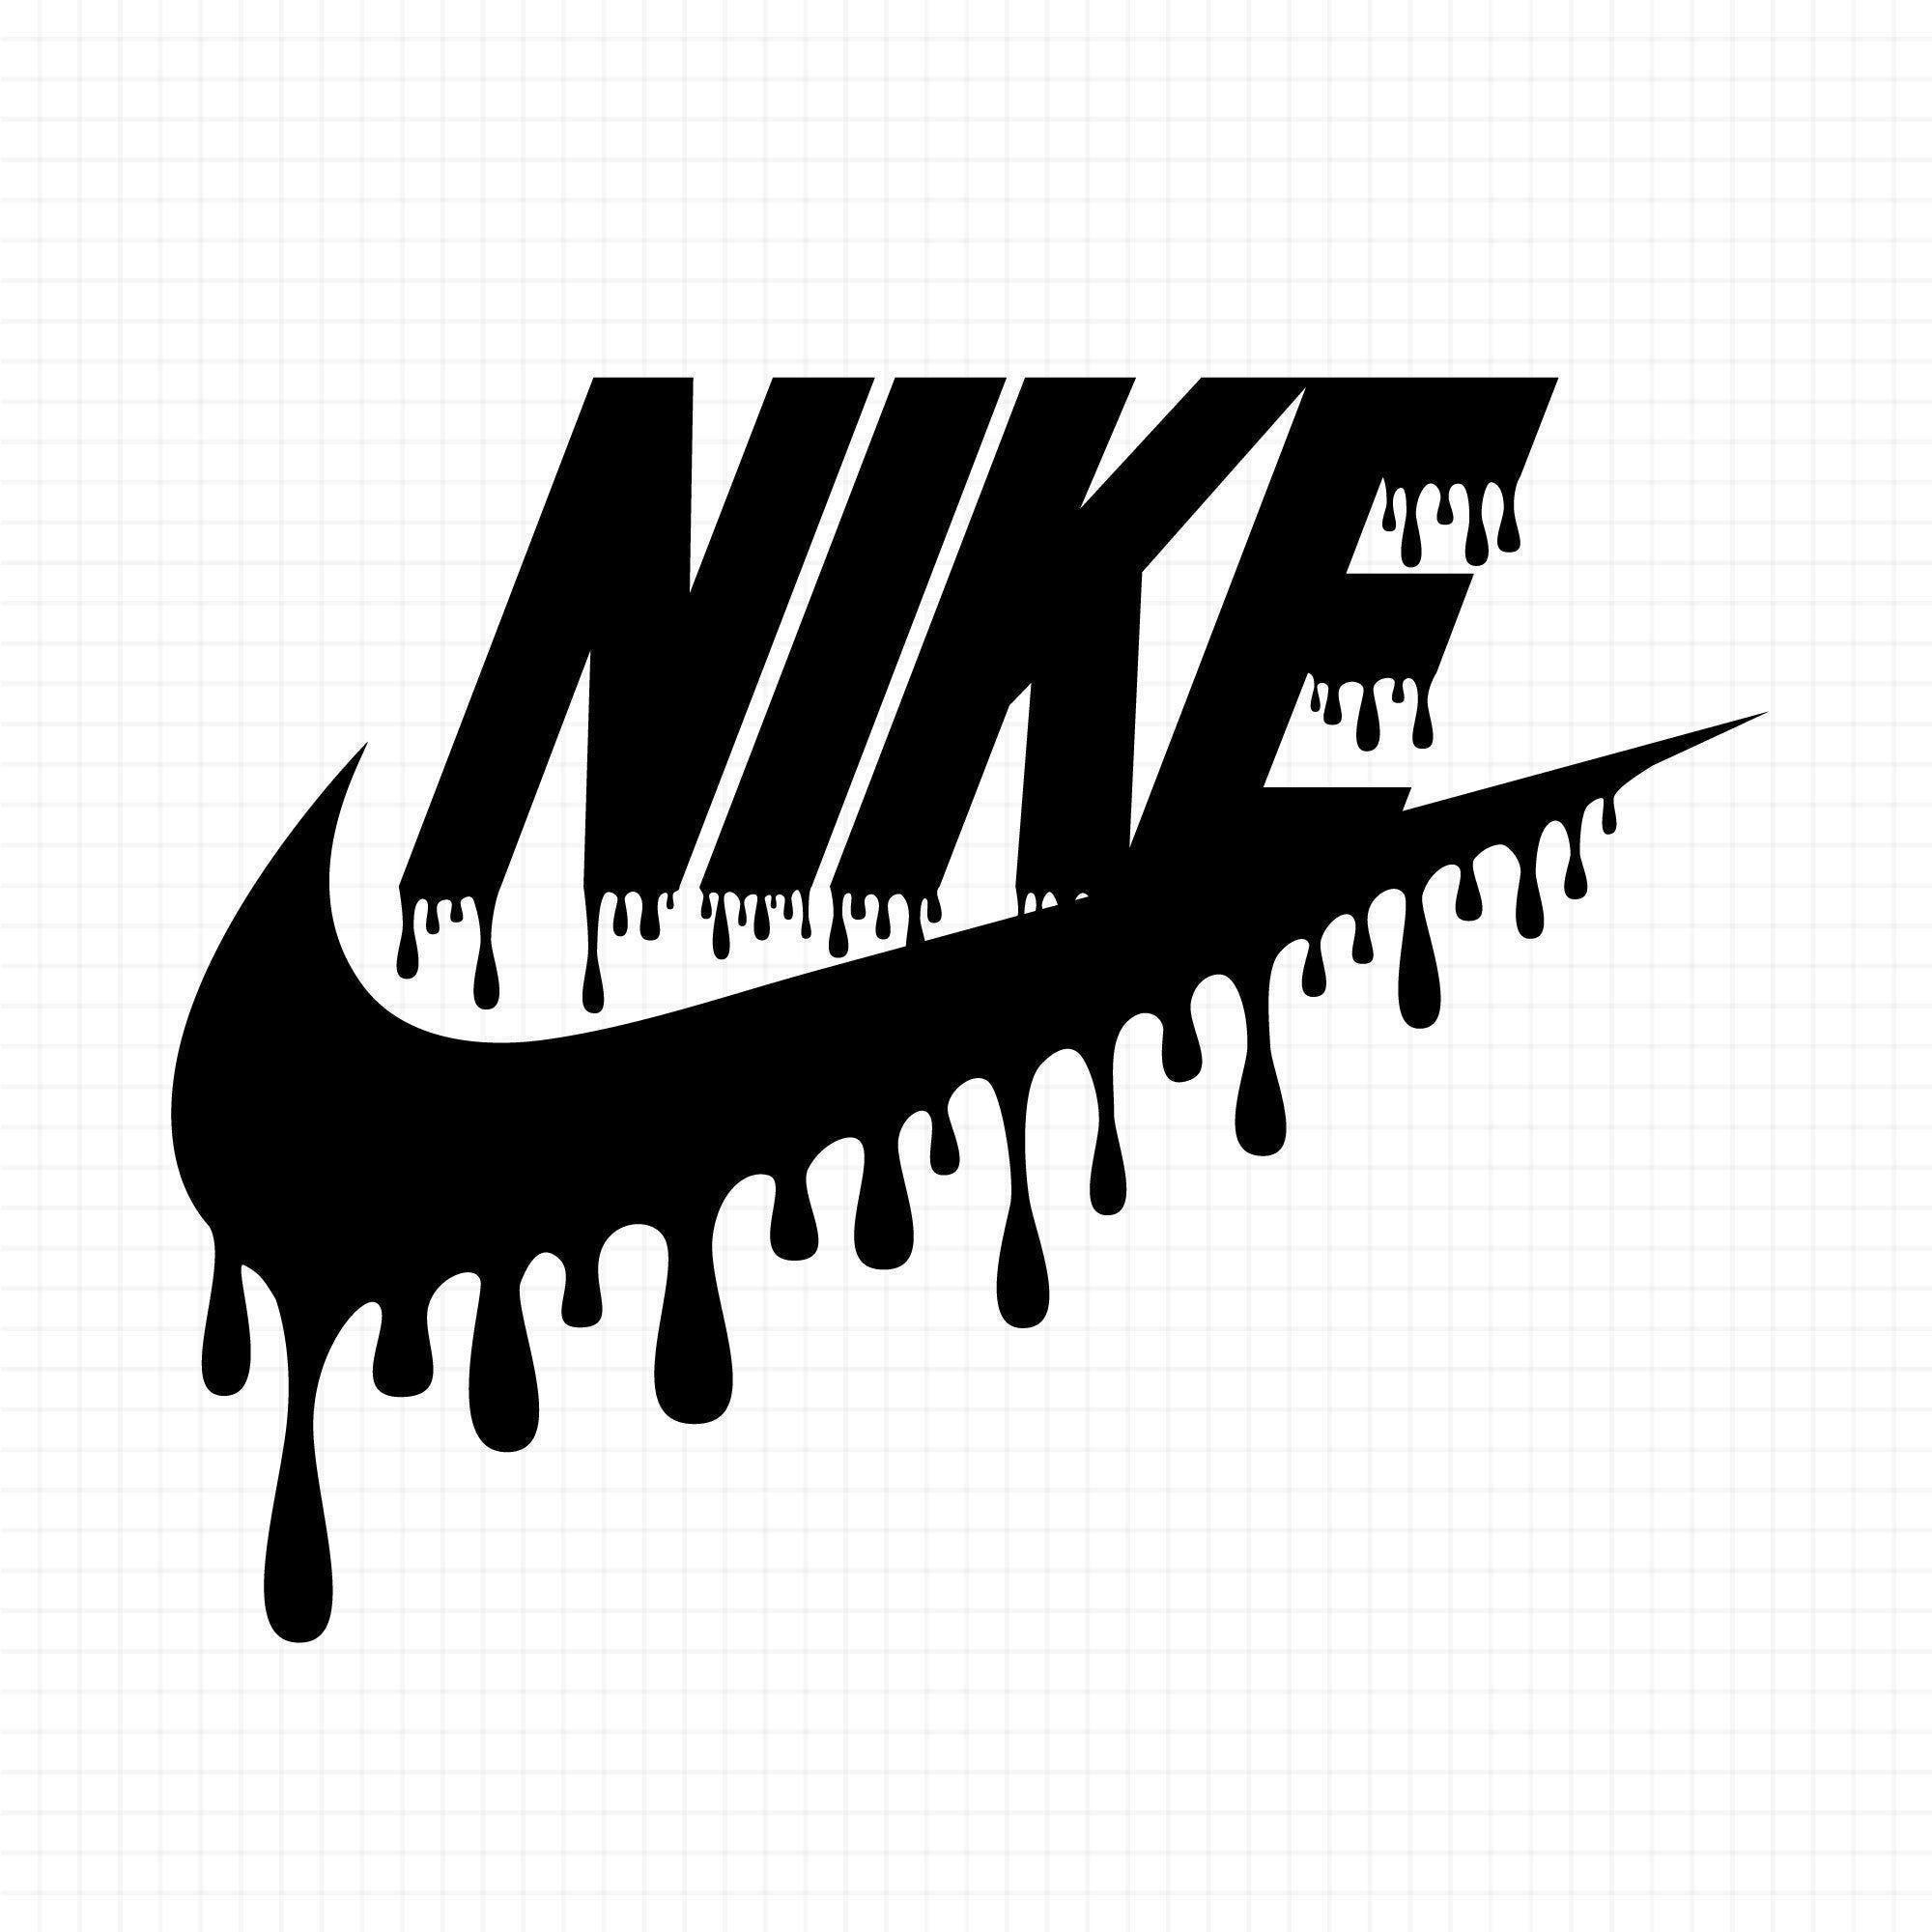 Hình nền đen Nike: Bộ sưu tập Hình nền đen Nike sẵn sàng đáp ứng mọi yêu cầu của bạn về giày thể thao. Với thiết kế từ những chất liệu cao cấp và độ bền tuyệt đối, bạn sẵn sàng cho bất kỳ hoạt động nào. Sắm ngay hôm nay để tận hưởng được những thiết kế đẹp mắt và chất lượng tốt nhất từ Nike.